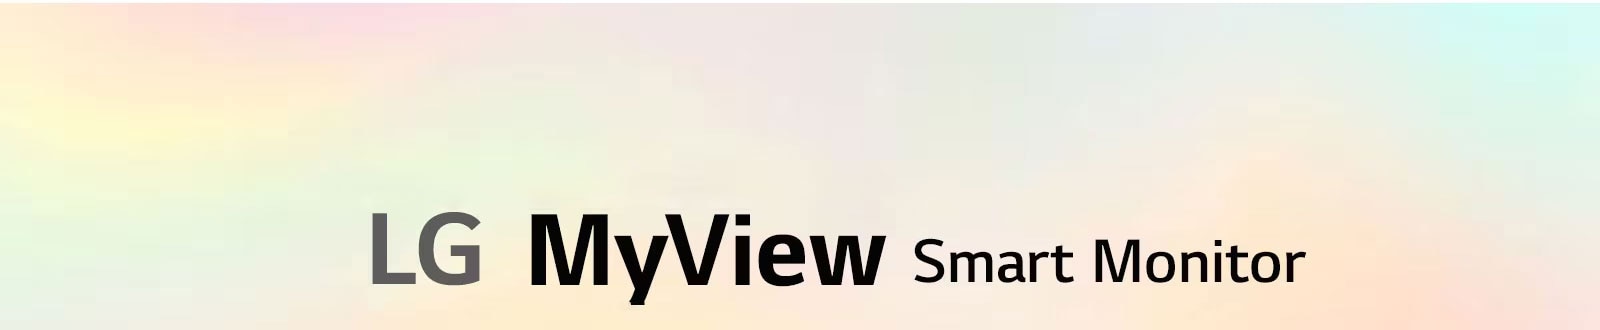 LG MyView Smart Monitor - Eén scherm. Eindeloze mogelijkheden.	